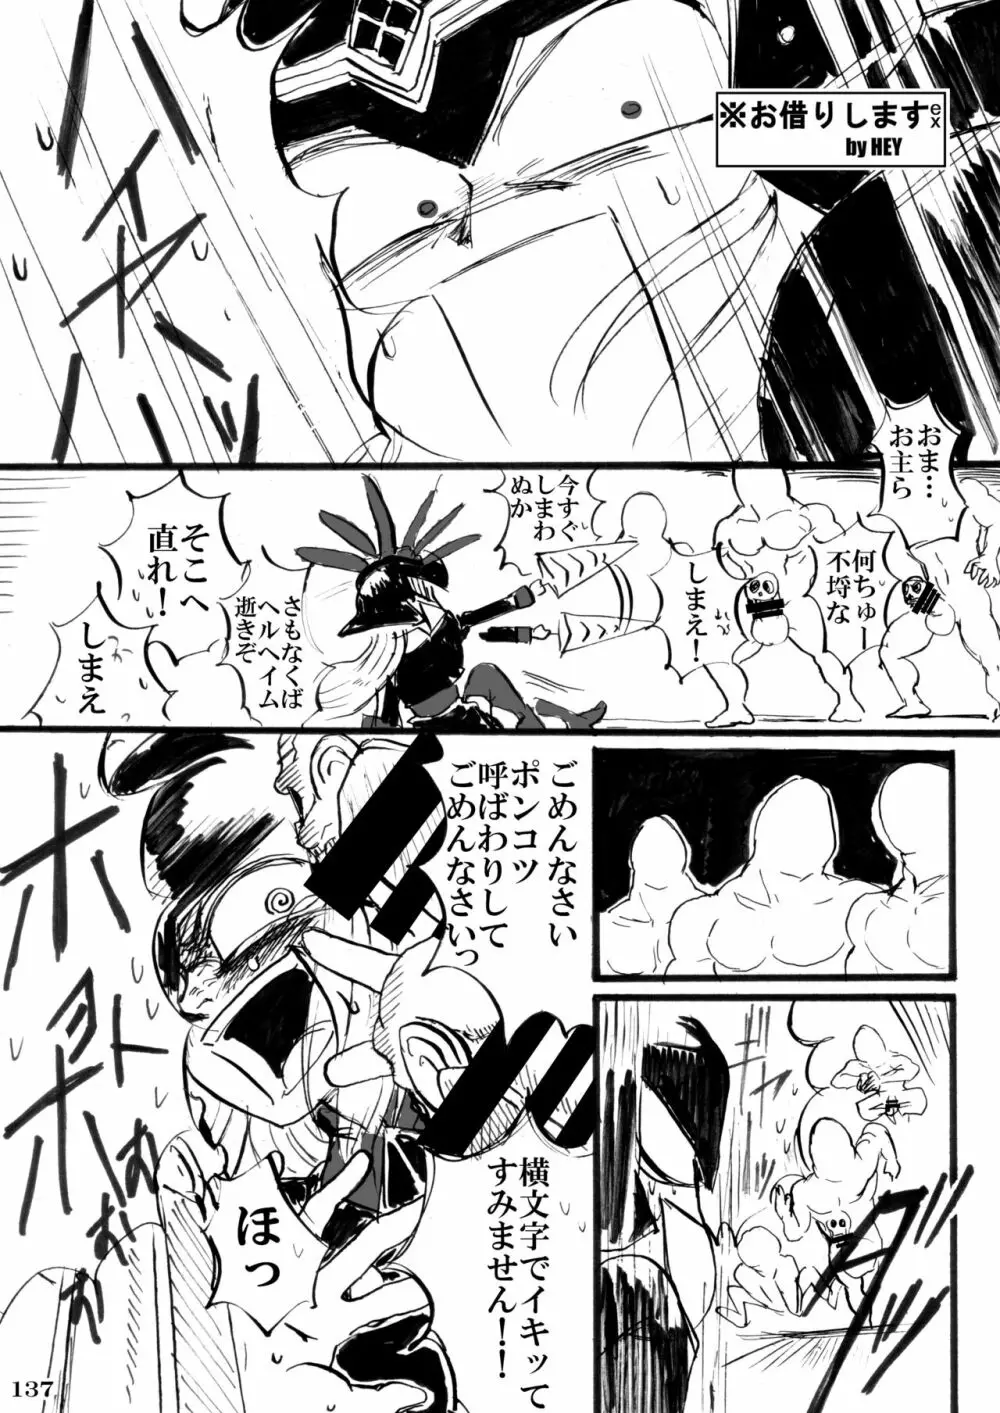 対戦格ゲーヒロインズ輪姦乱交アラカルト!～EXTRA ROUND～ - page141